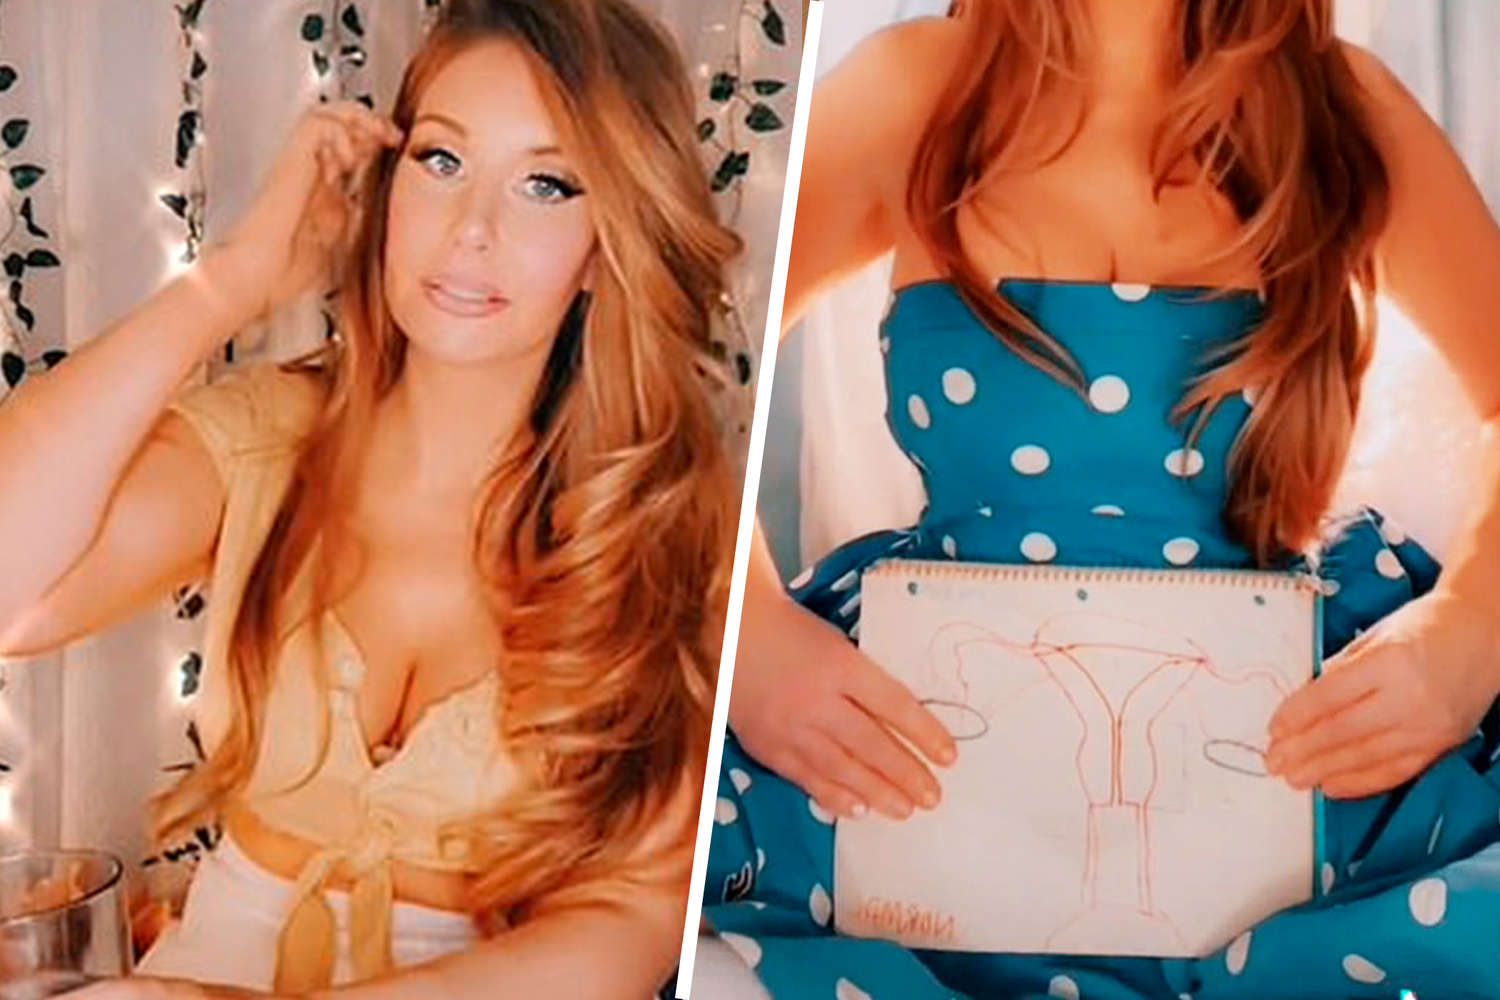 Фото девушки с двумя вагинами порно видео. Смотреть фото девушки с двумя вагинами онлайн